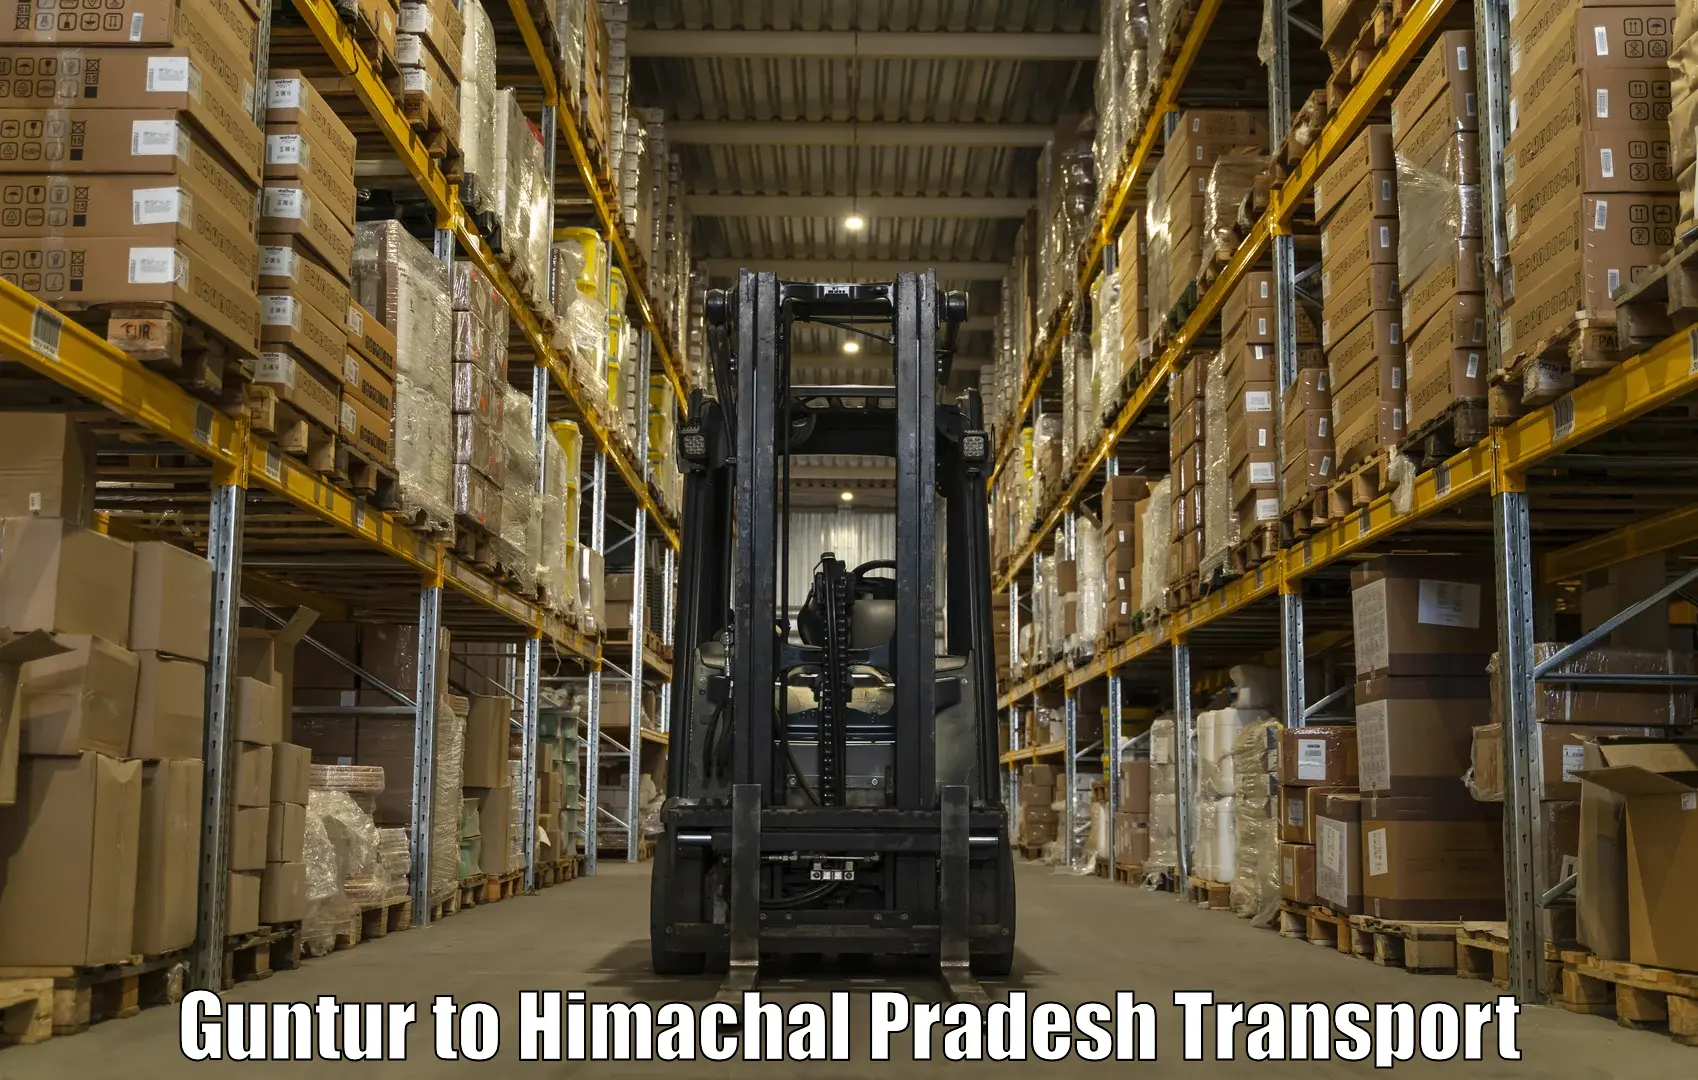 Domestic goods transportation services Guntur to Rakkar